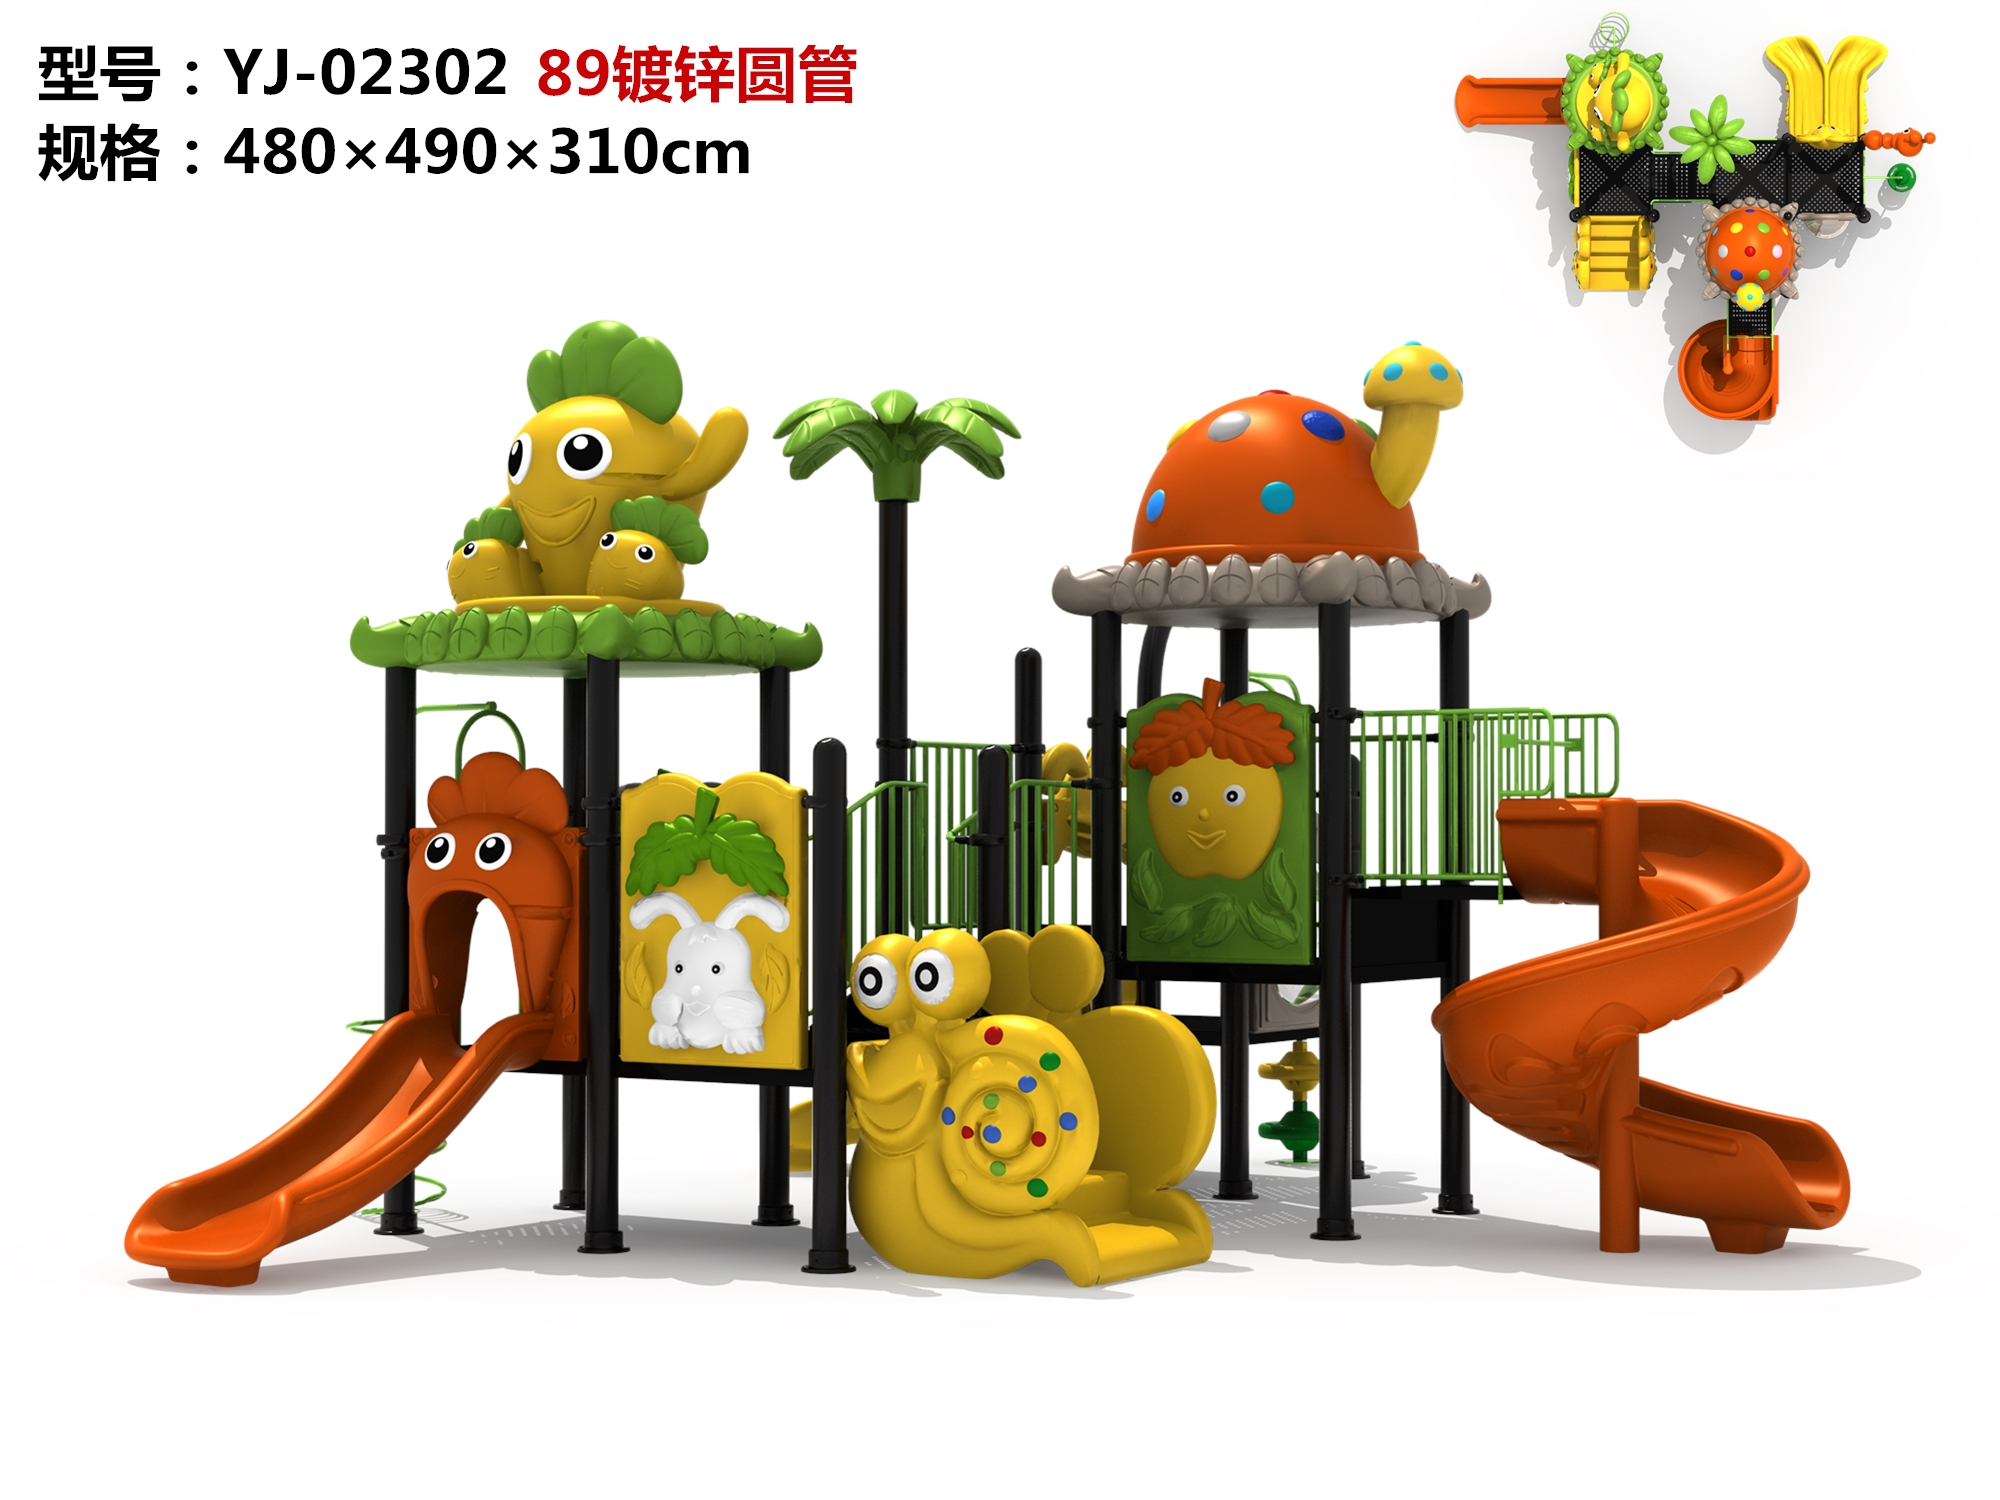 OL-MH02302 Equipo de juegos de juegos para niños al aire libre Venta